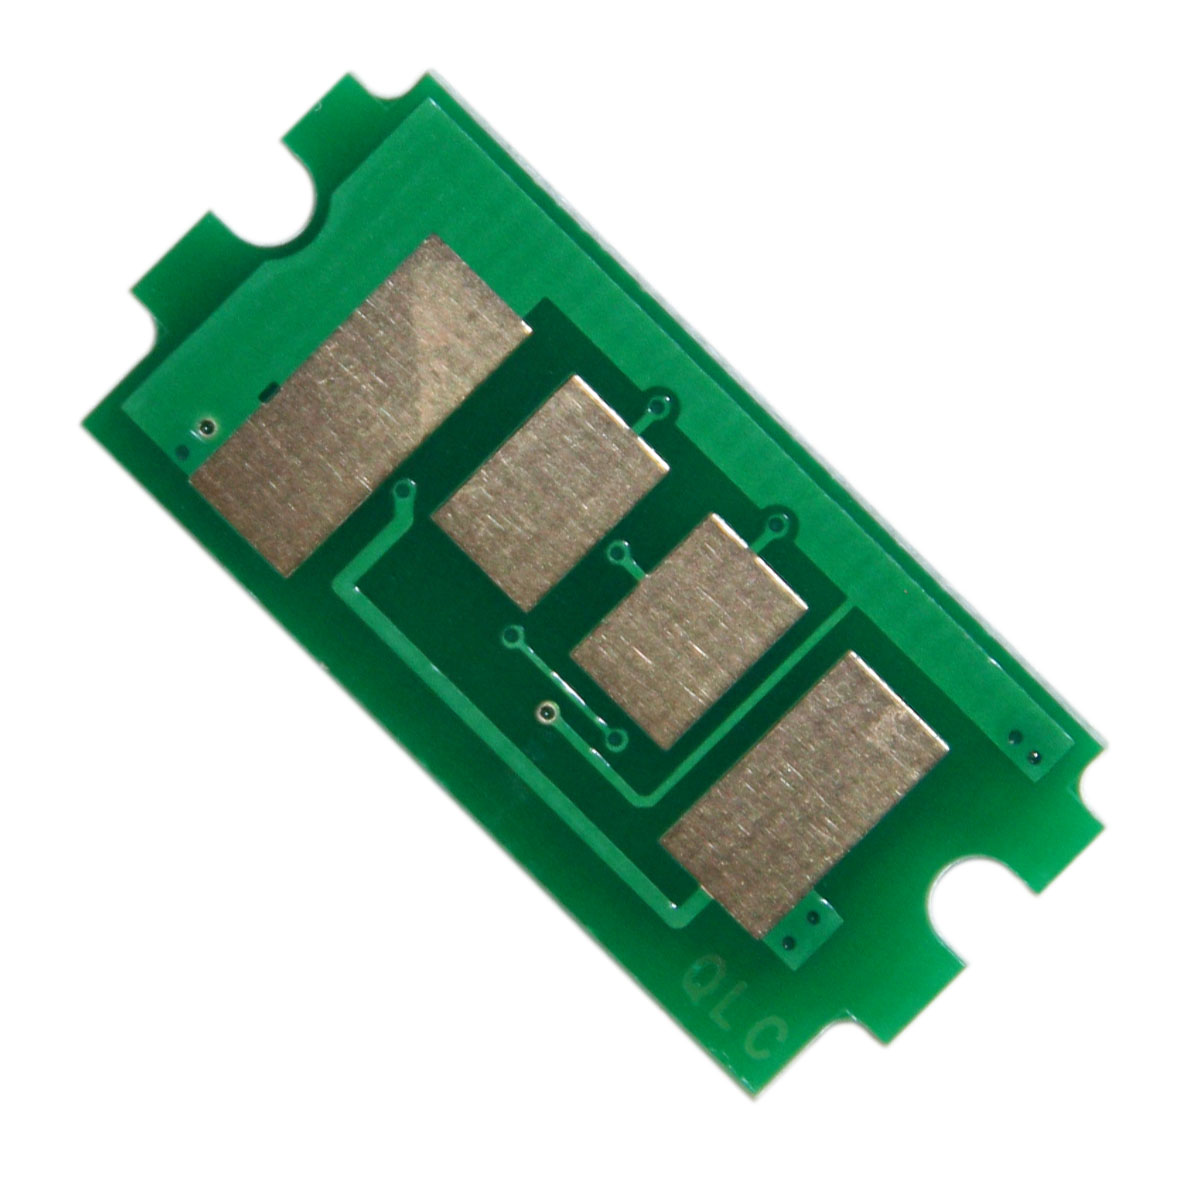 Counter chip Kyocera-Mita FS 4300